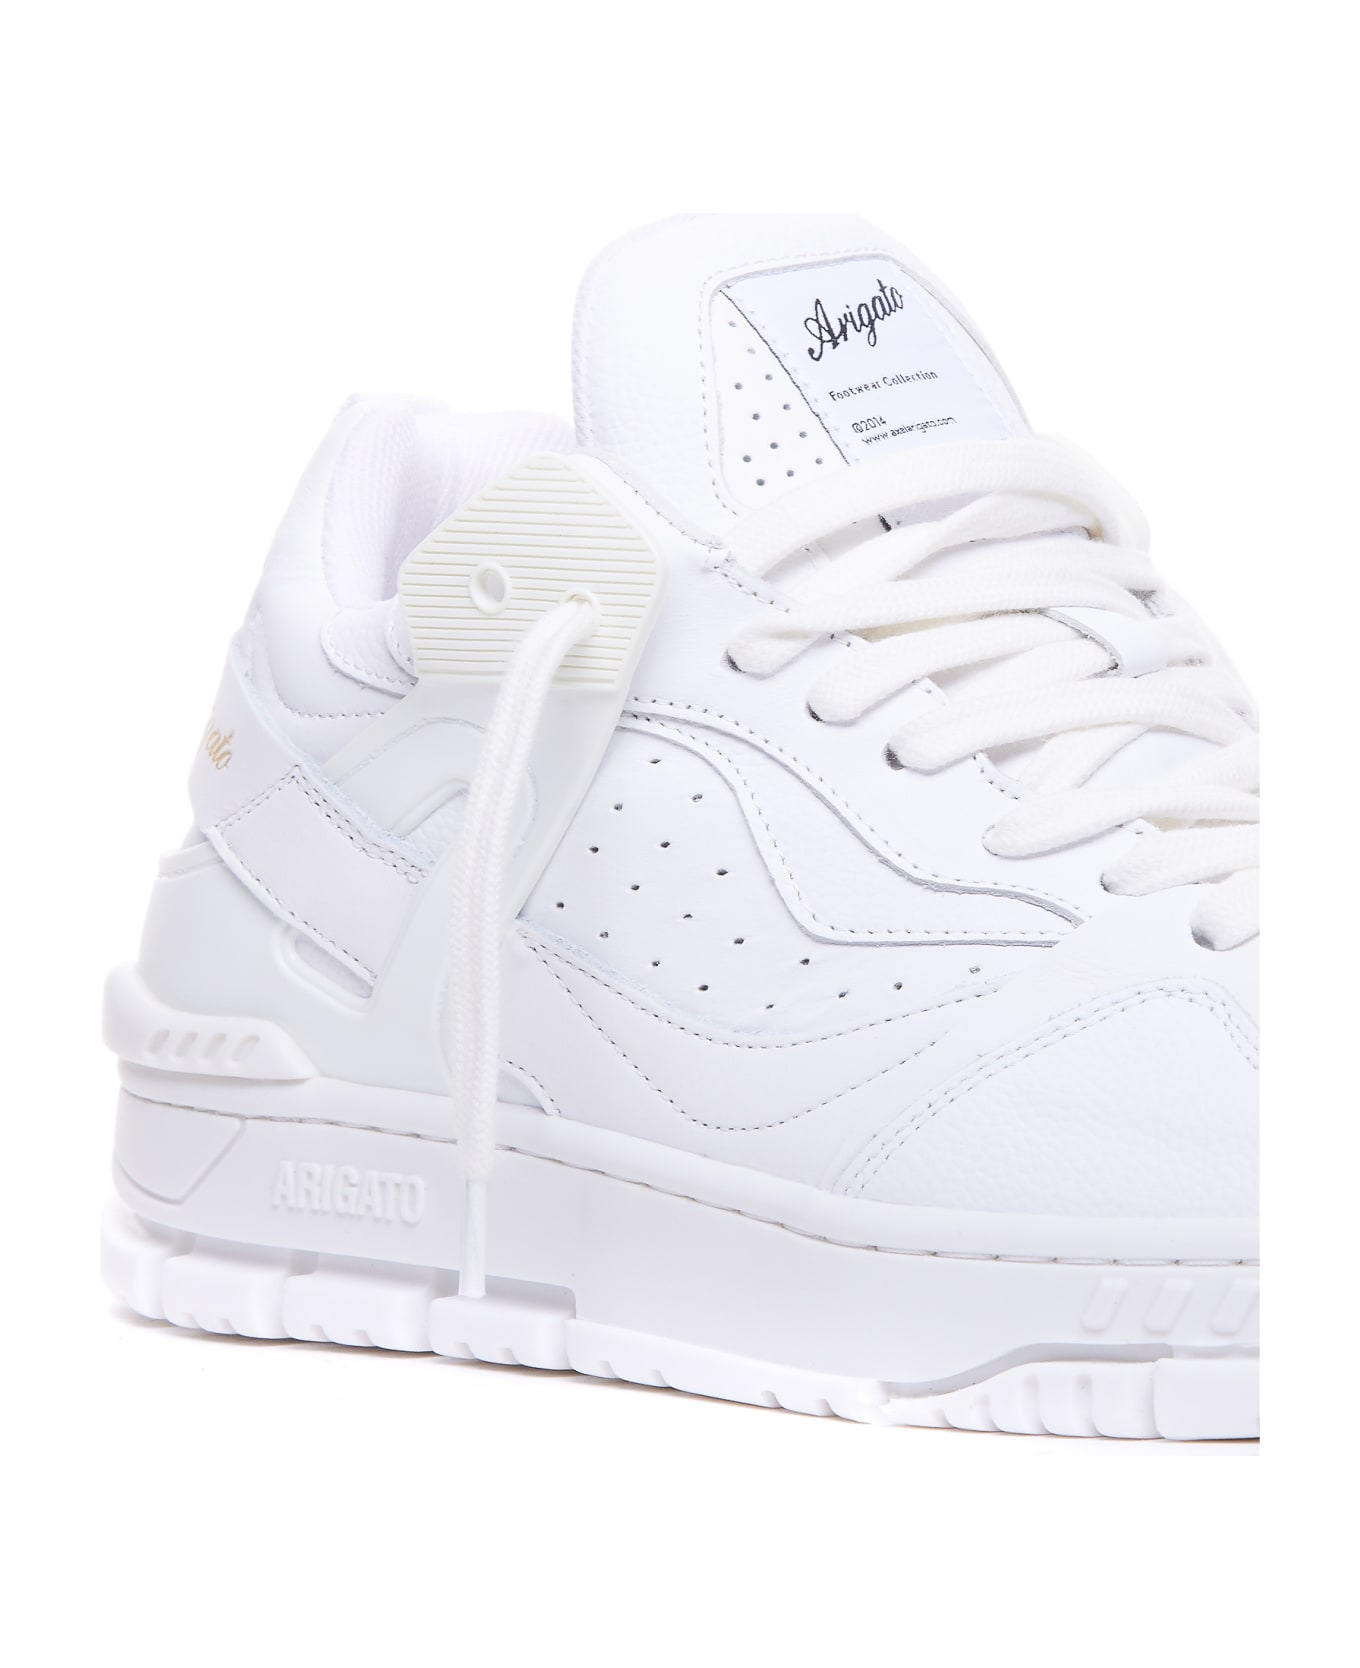 Axel Arigato Astro Sneakers - White